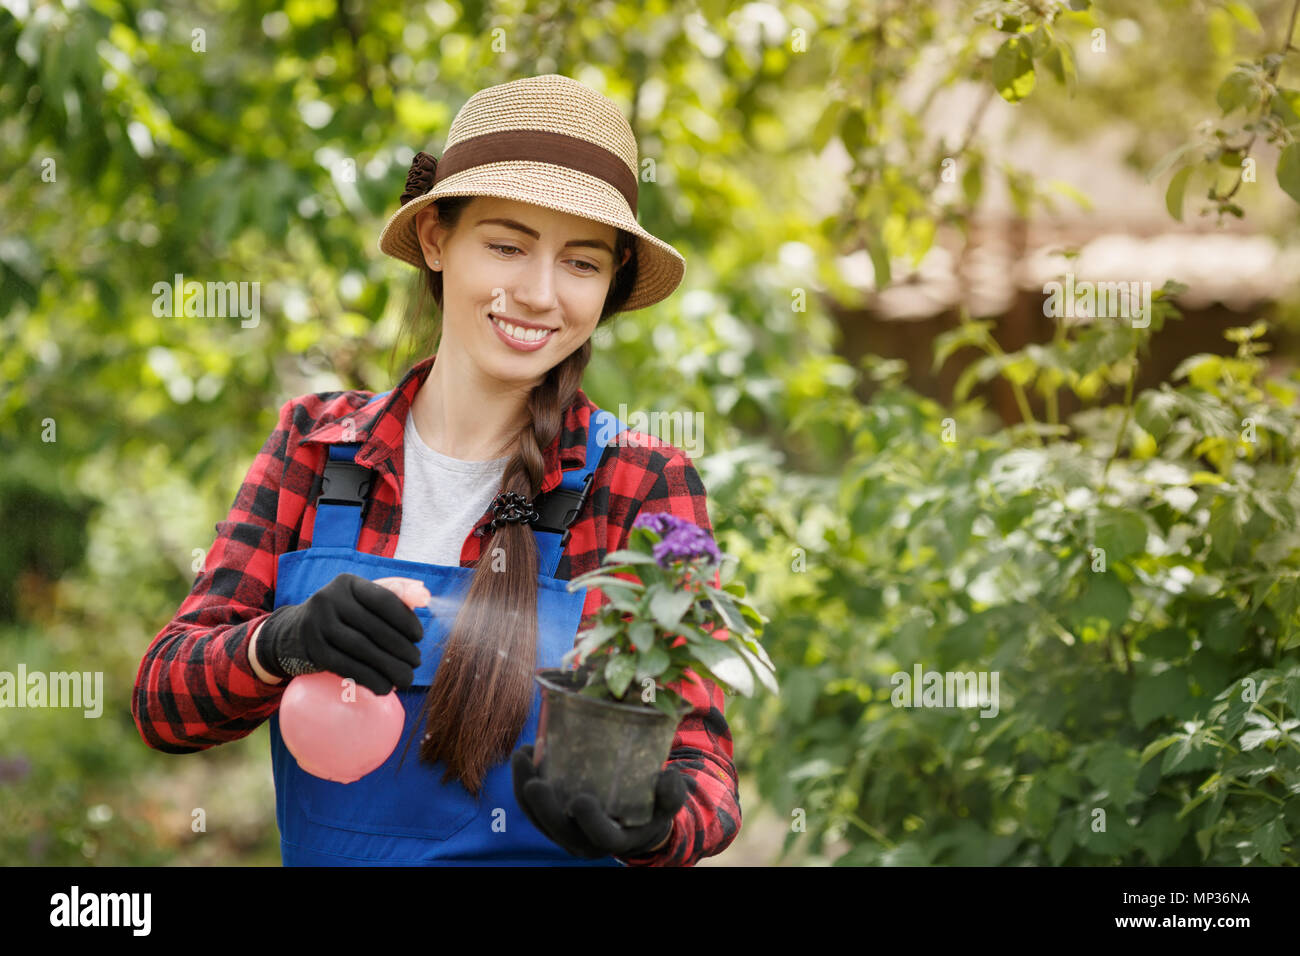 Glückliche junge Frau Gärtner in Arbeit Kleidung Sprühen von Pestiziden oder Wasser auf Blumen im Topf. Gartenbau und Pflege der Pflanzen als Hobby Konzept Stockfoto